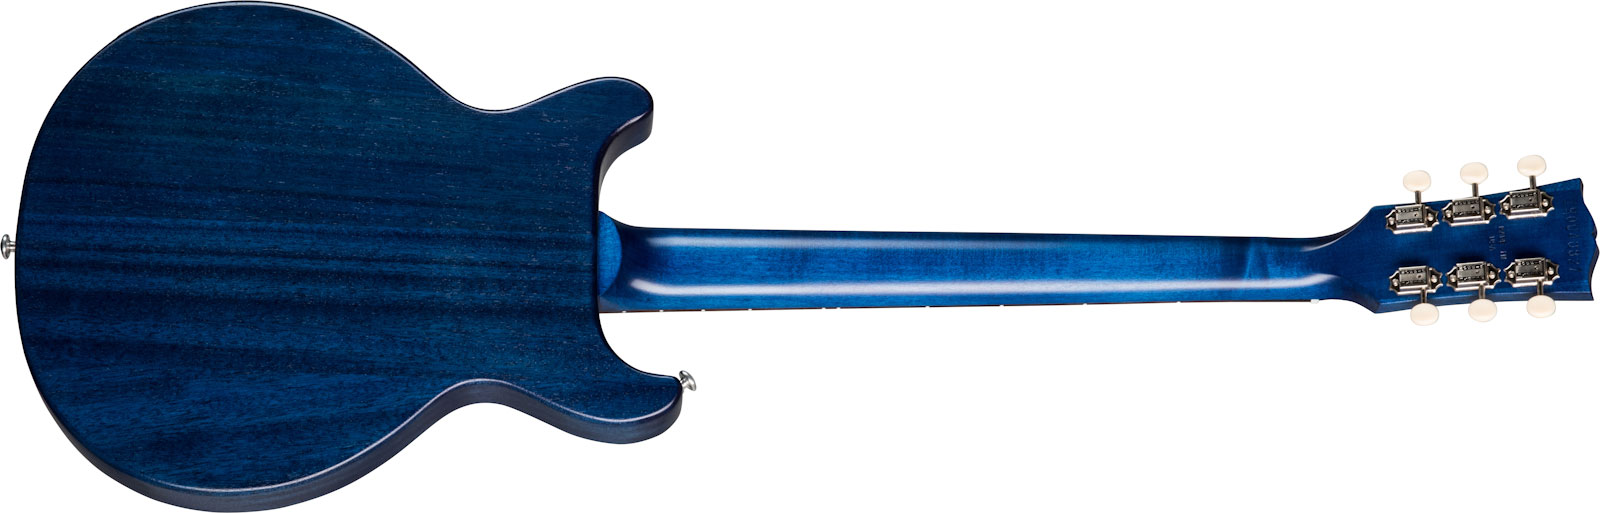 Gibson Les Paul Special Tribute Dc Modern P90 - Blue Stain - Guitarra eléctrica de doble corte. - Variation 1